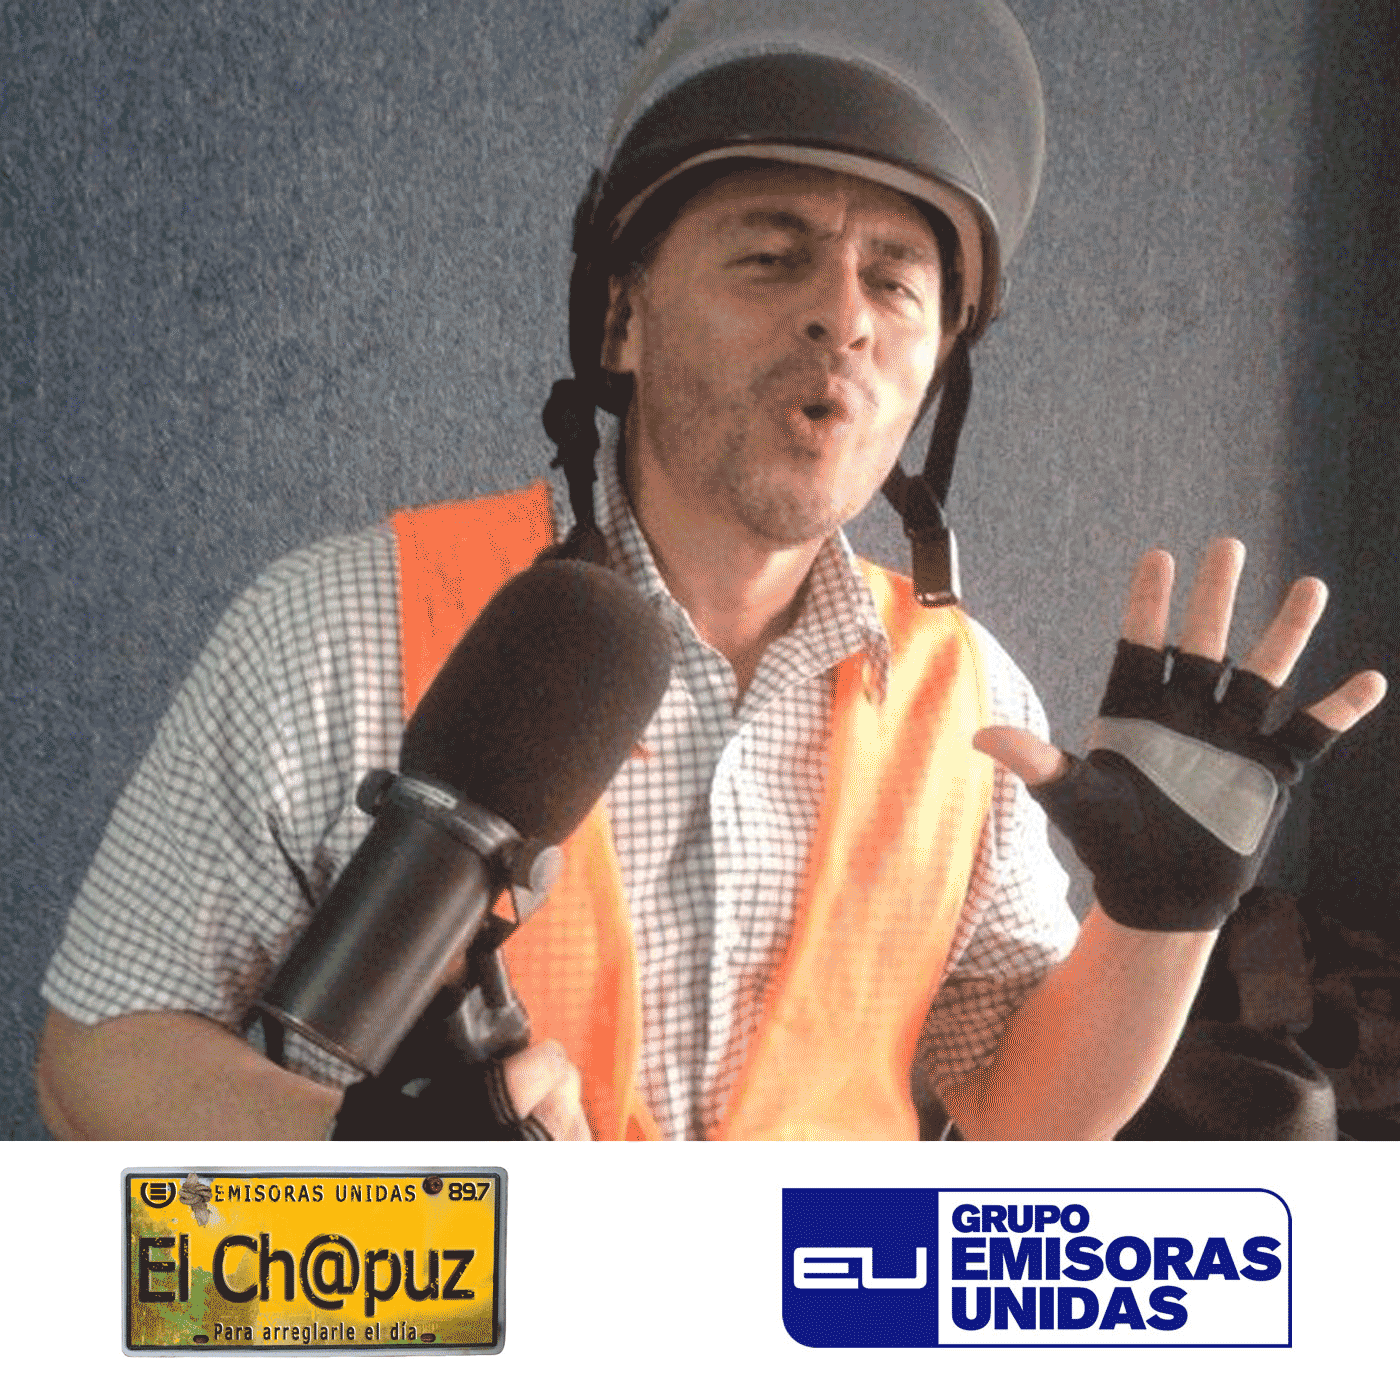 EC033 - El Chapuz - Emisoras unidas - #SeMeVaElAvionCuando